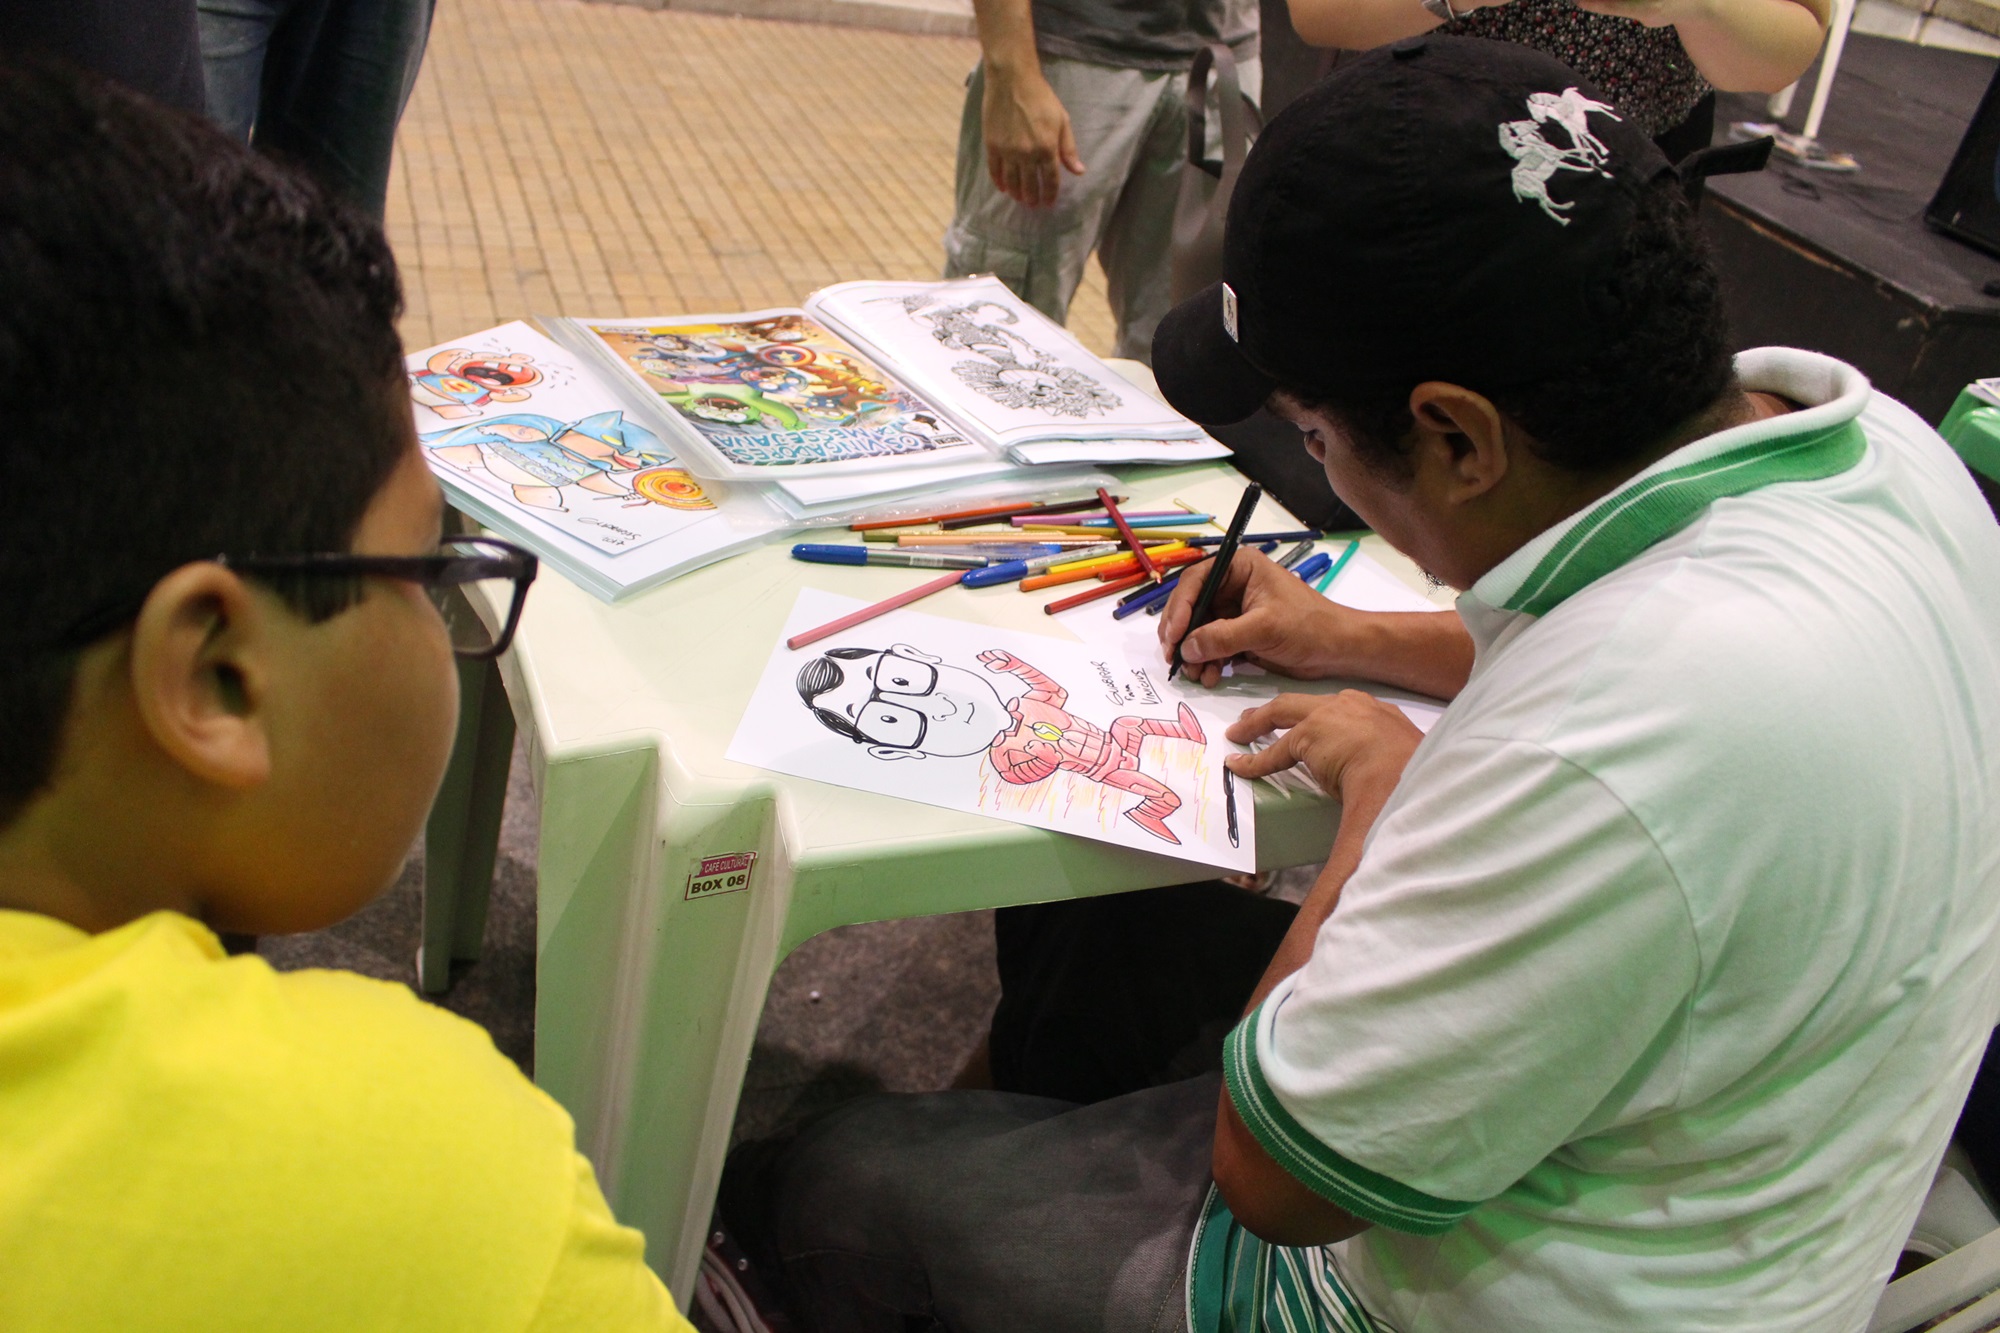 Cartunista Guabiras fazer um retrato de um garoto